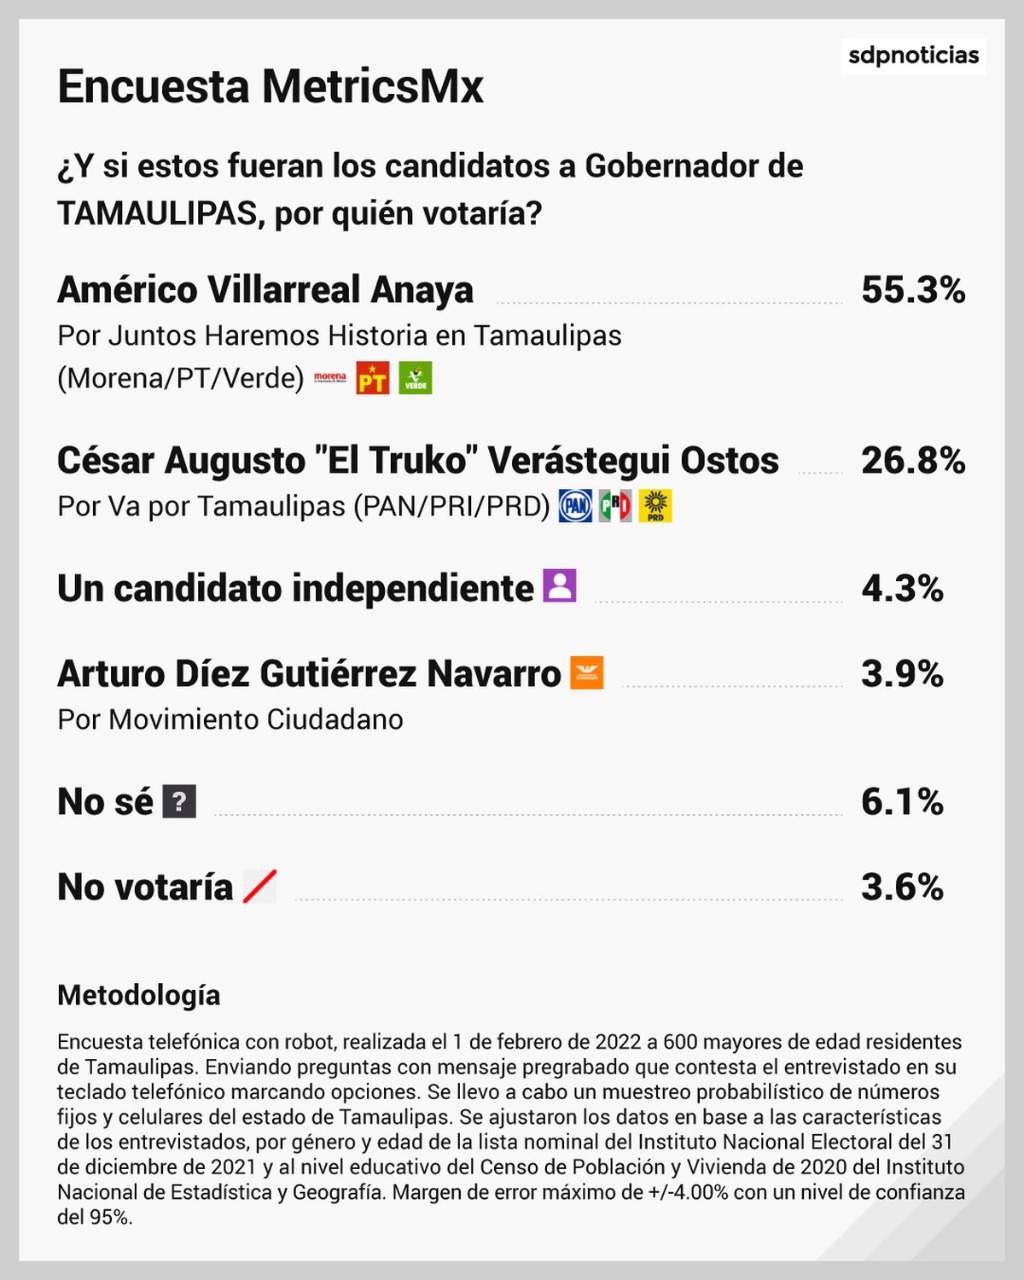 Cierran Américo y Morena precampaña con ventaja de 28.5%: MetricsMX